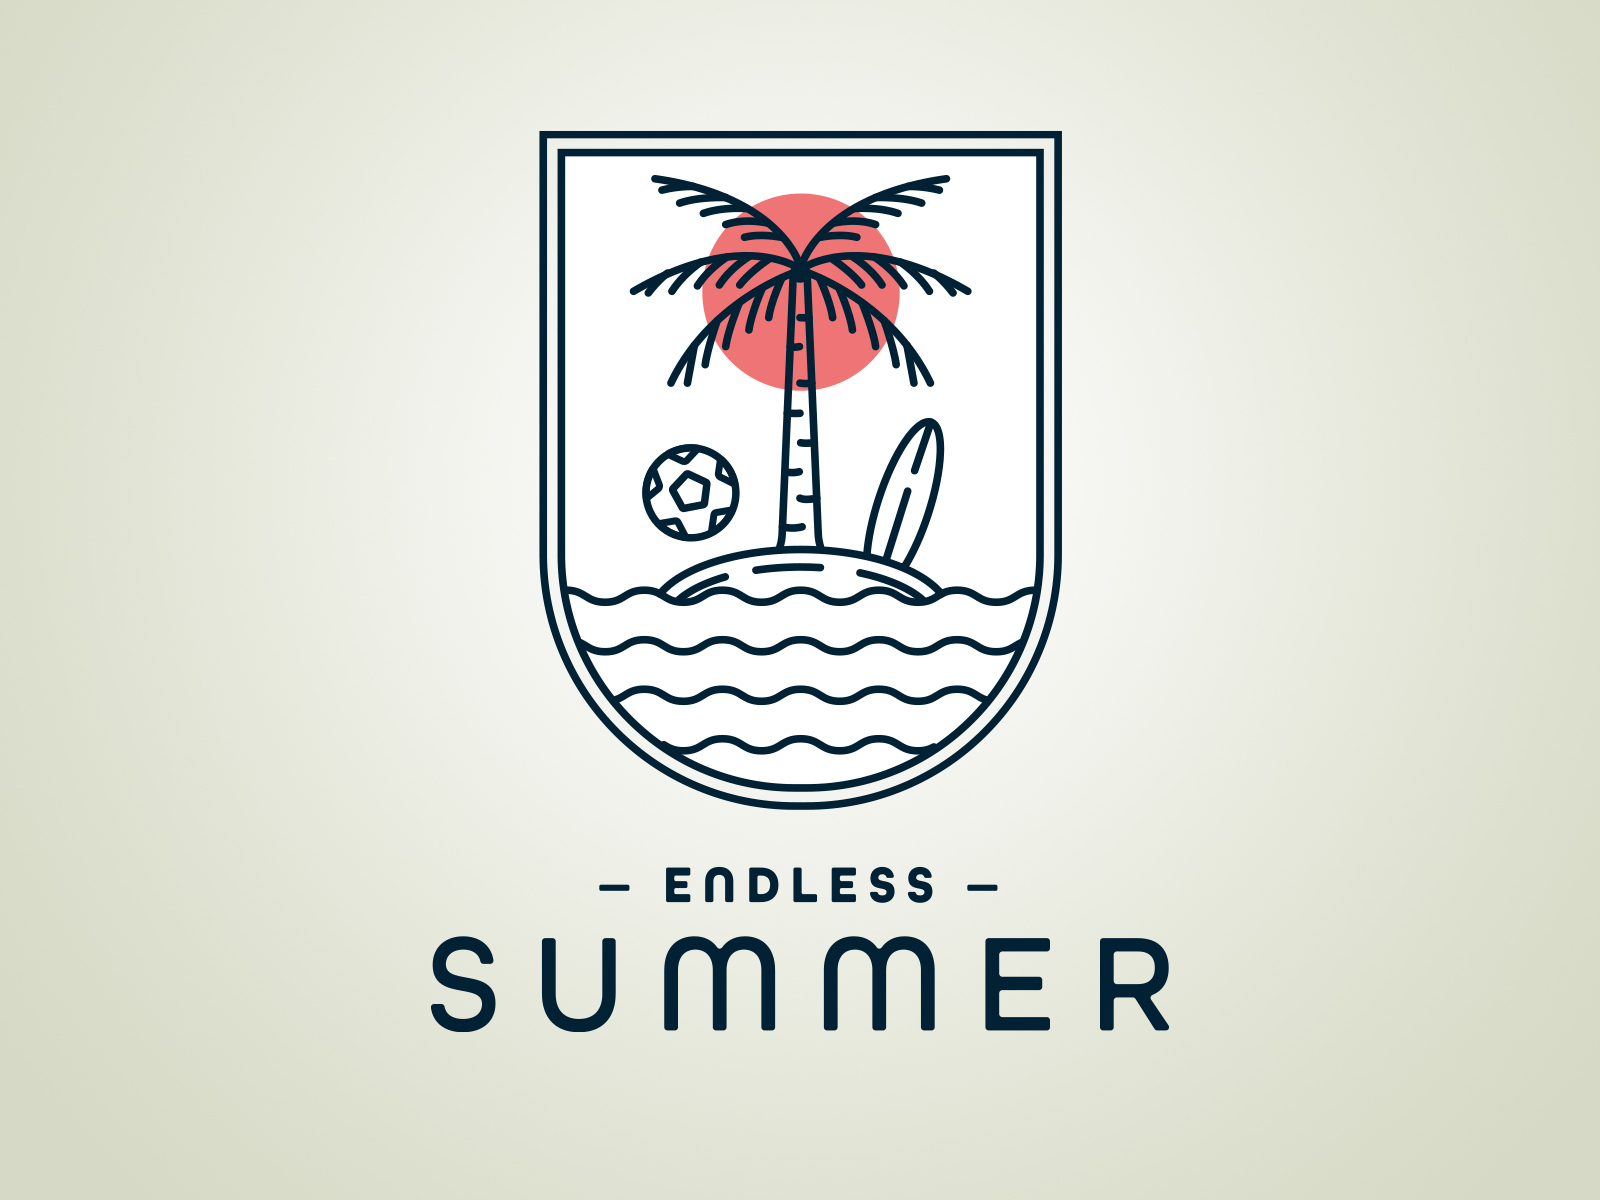 Endless Summer Soccer Tournament by John Cross on Dribbble